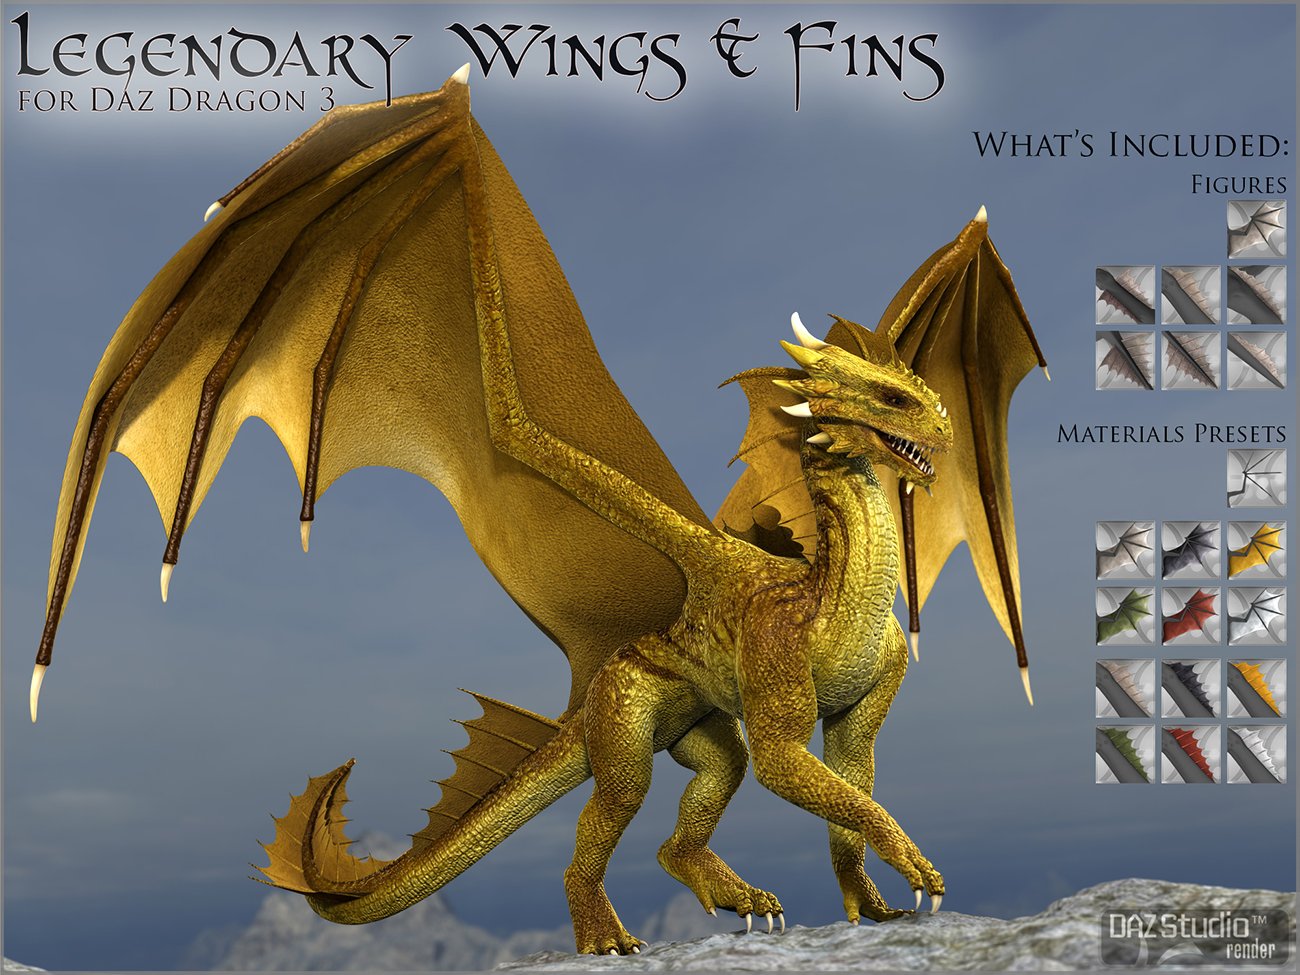 Legendary Wings & Fins HD for DAZ Dragon 3 by: DarioFish, 3D Models by Daz 3D